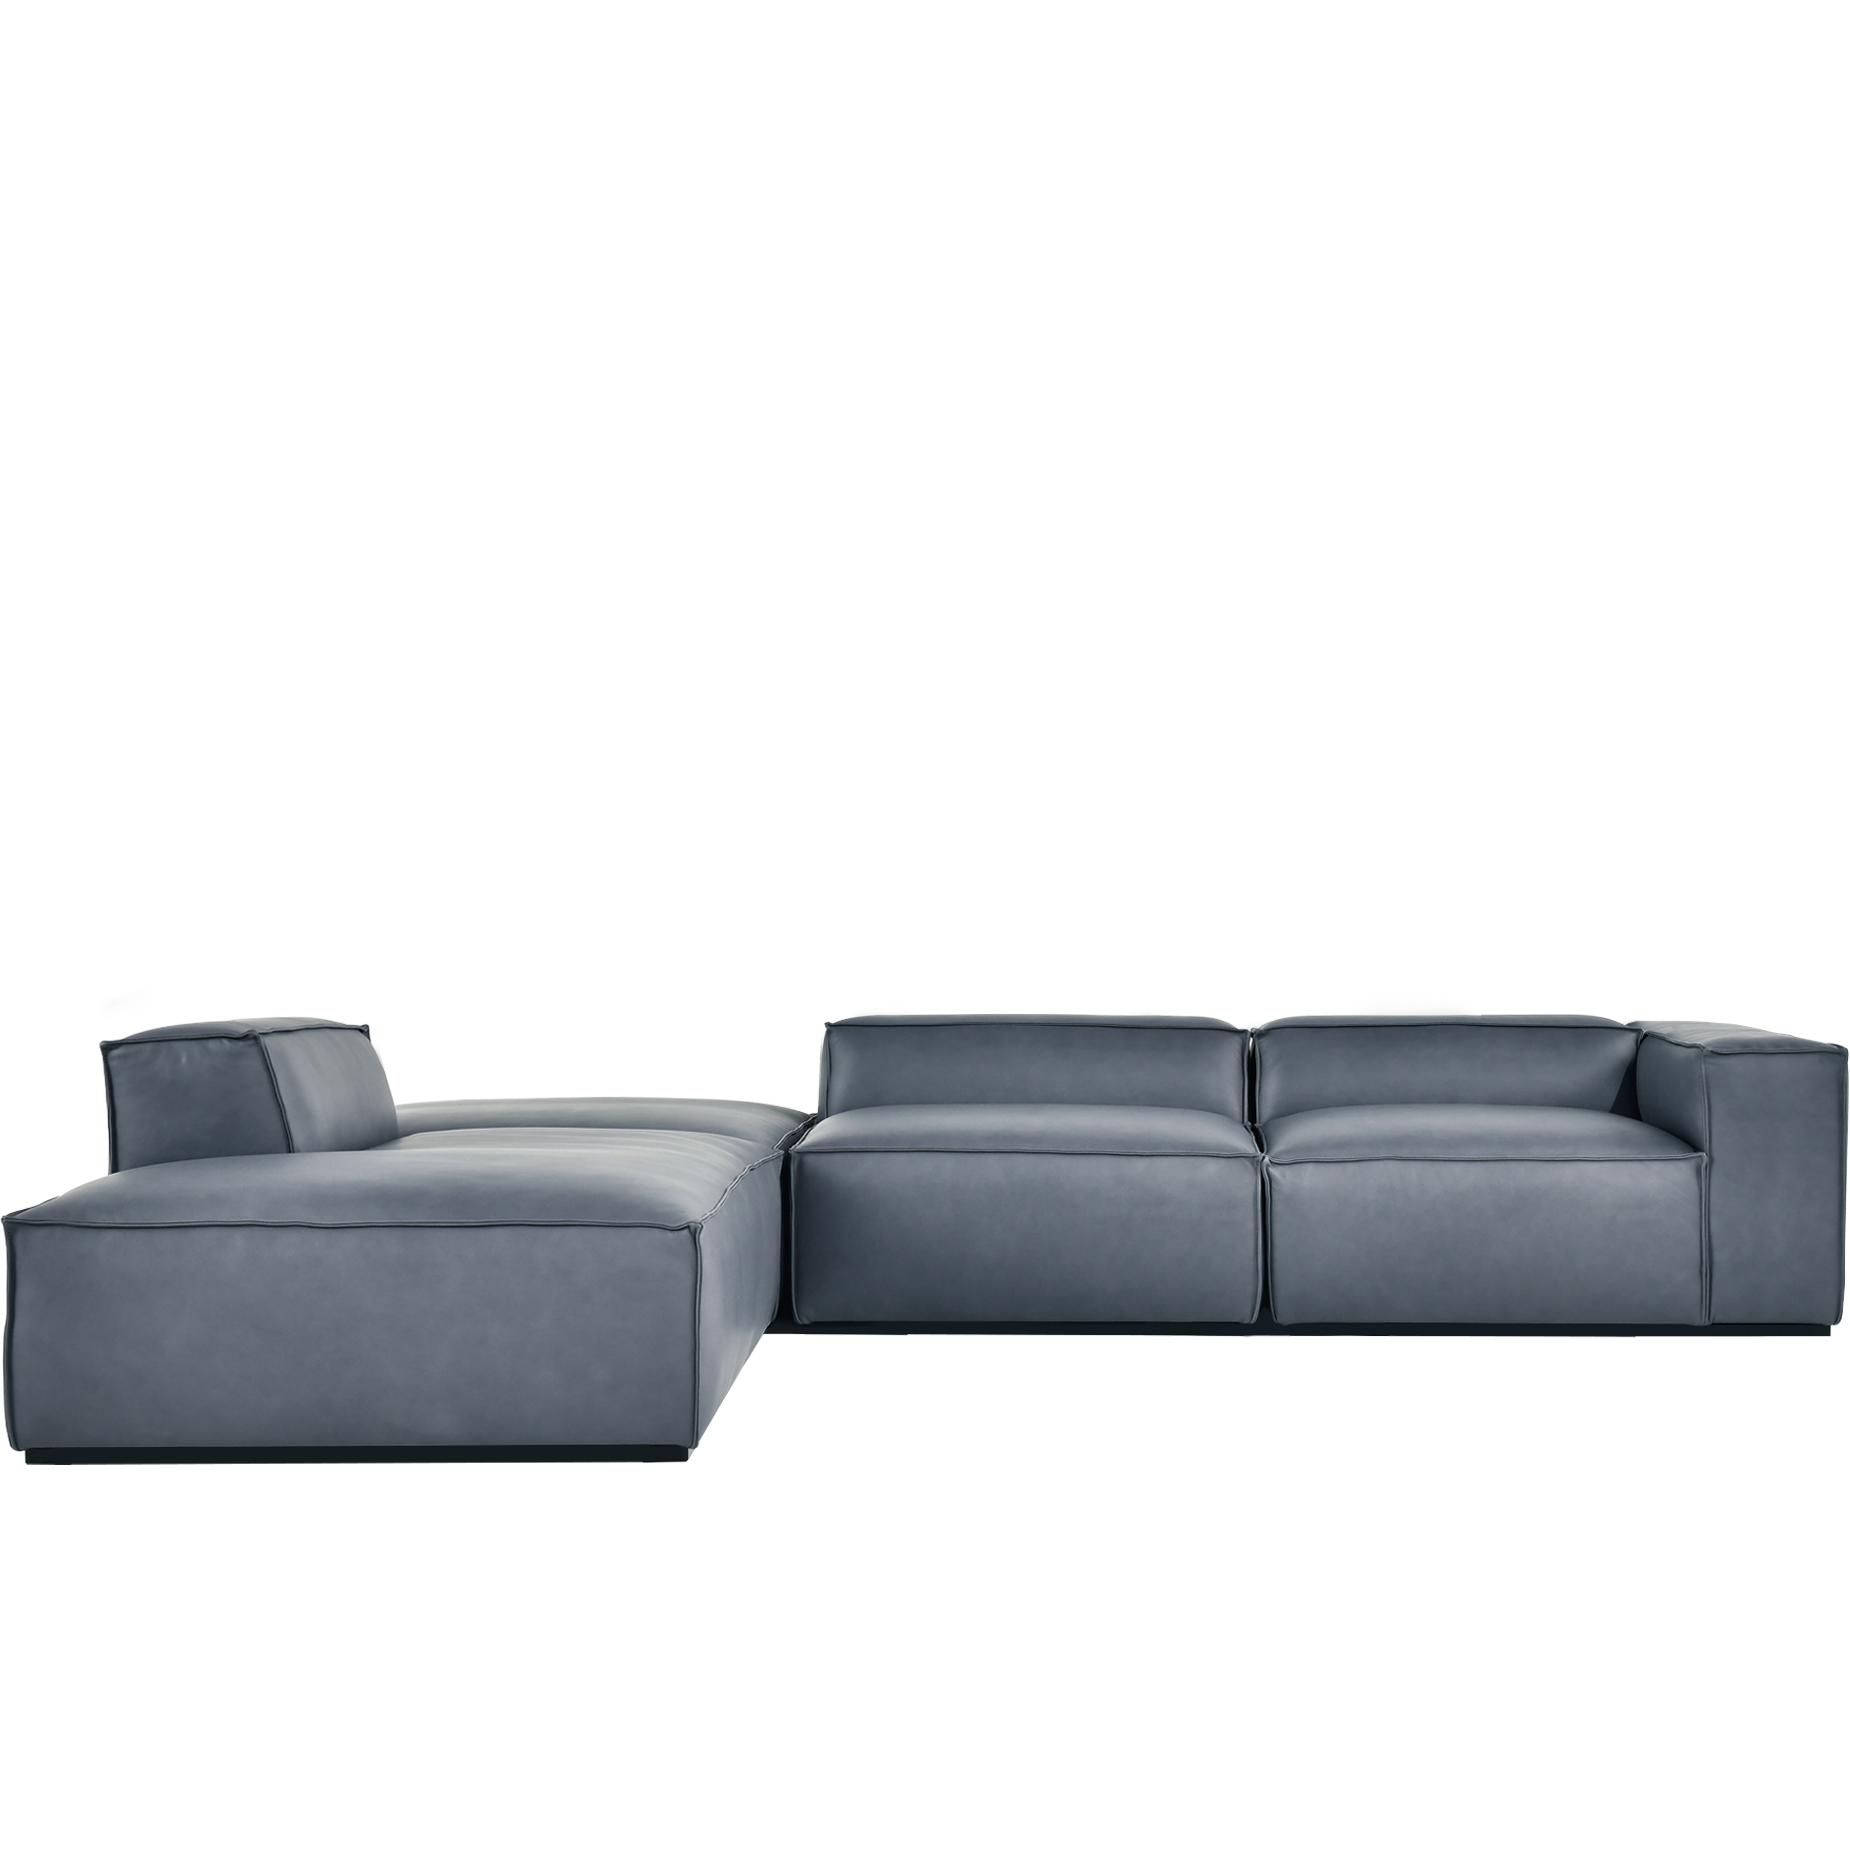 (주)도이치 DOICH ®    PEN16 modular couch sofa 도이치 펜16  4인 카우치 모듈소파  [4주 주문제작]